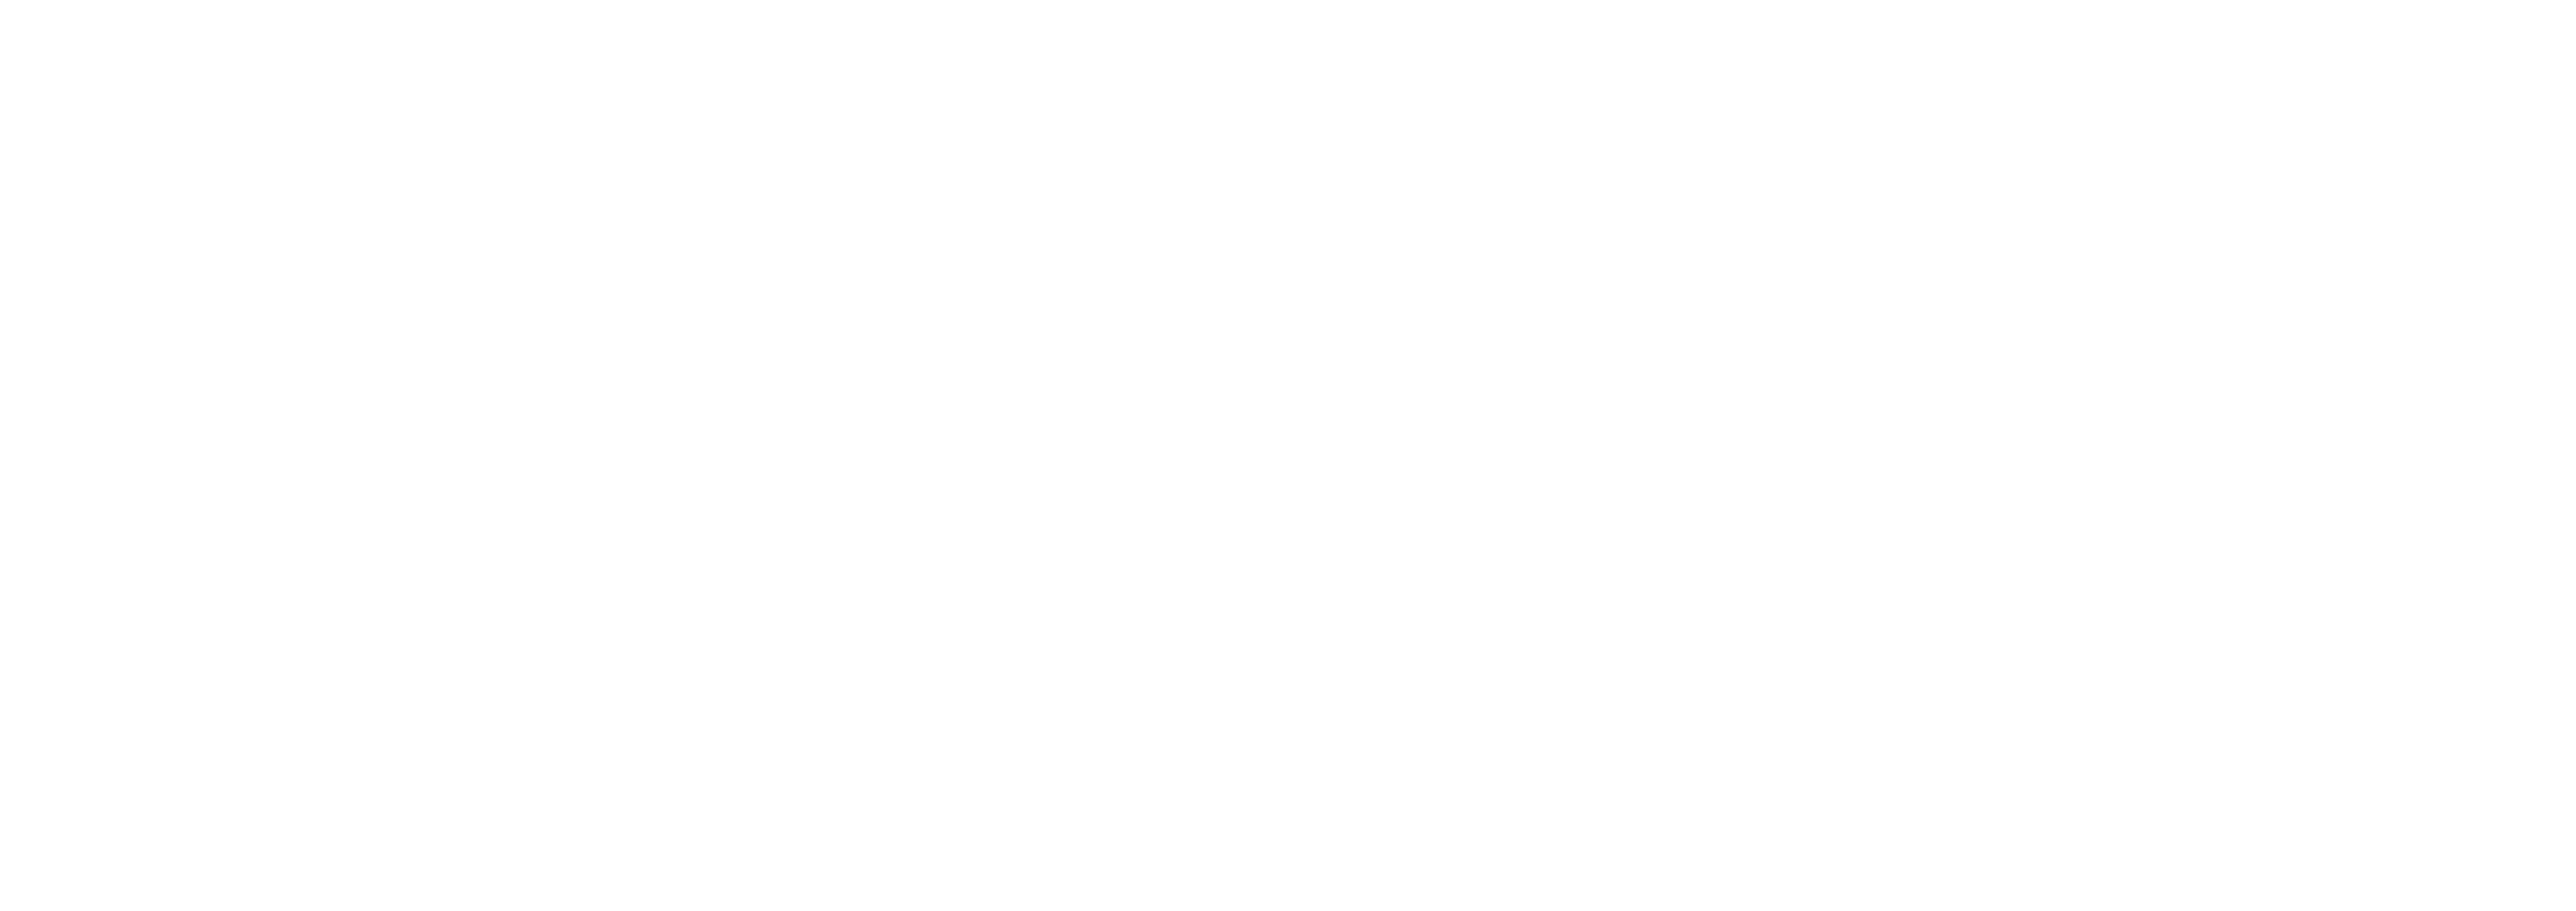 FynArts Gallery